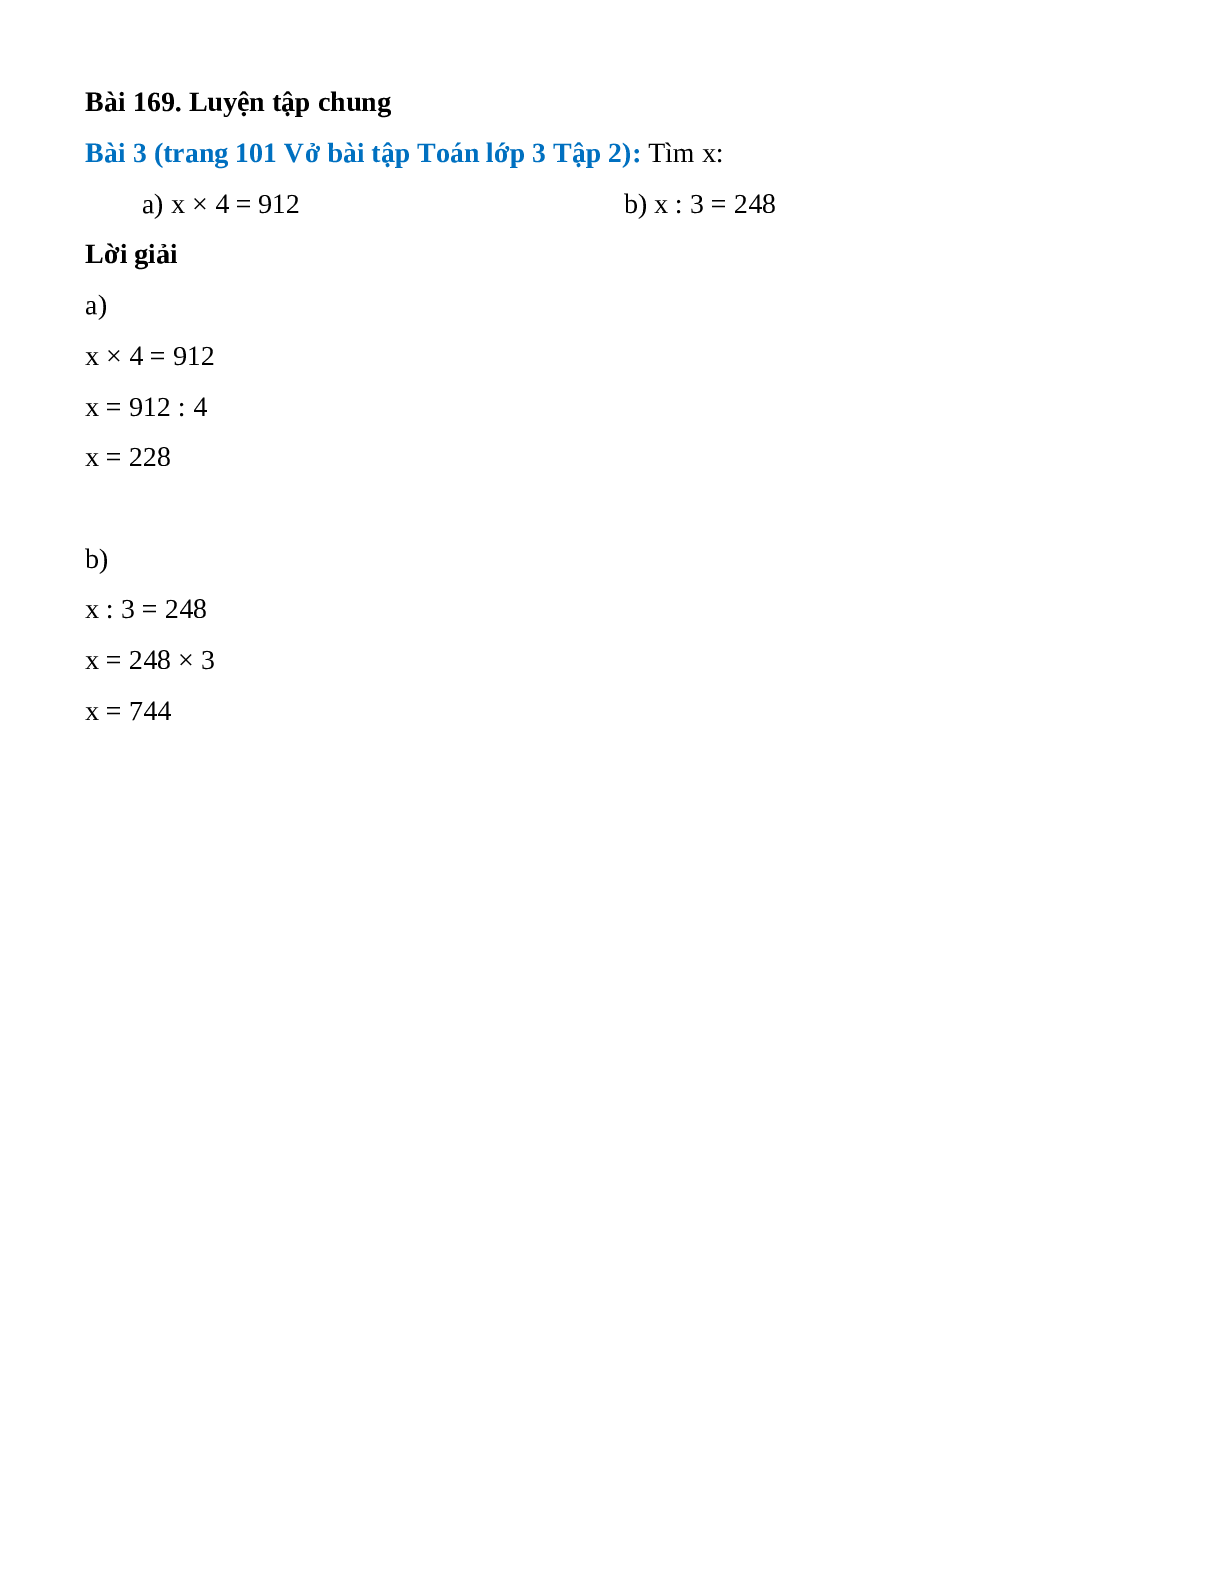 Tìm x: x × 4 = 912, x : 3 = 248 (trang 1)